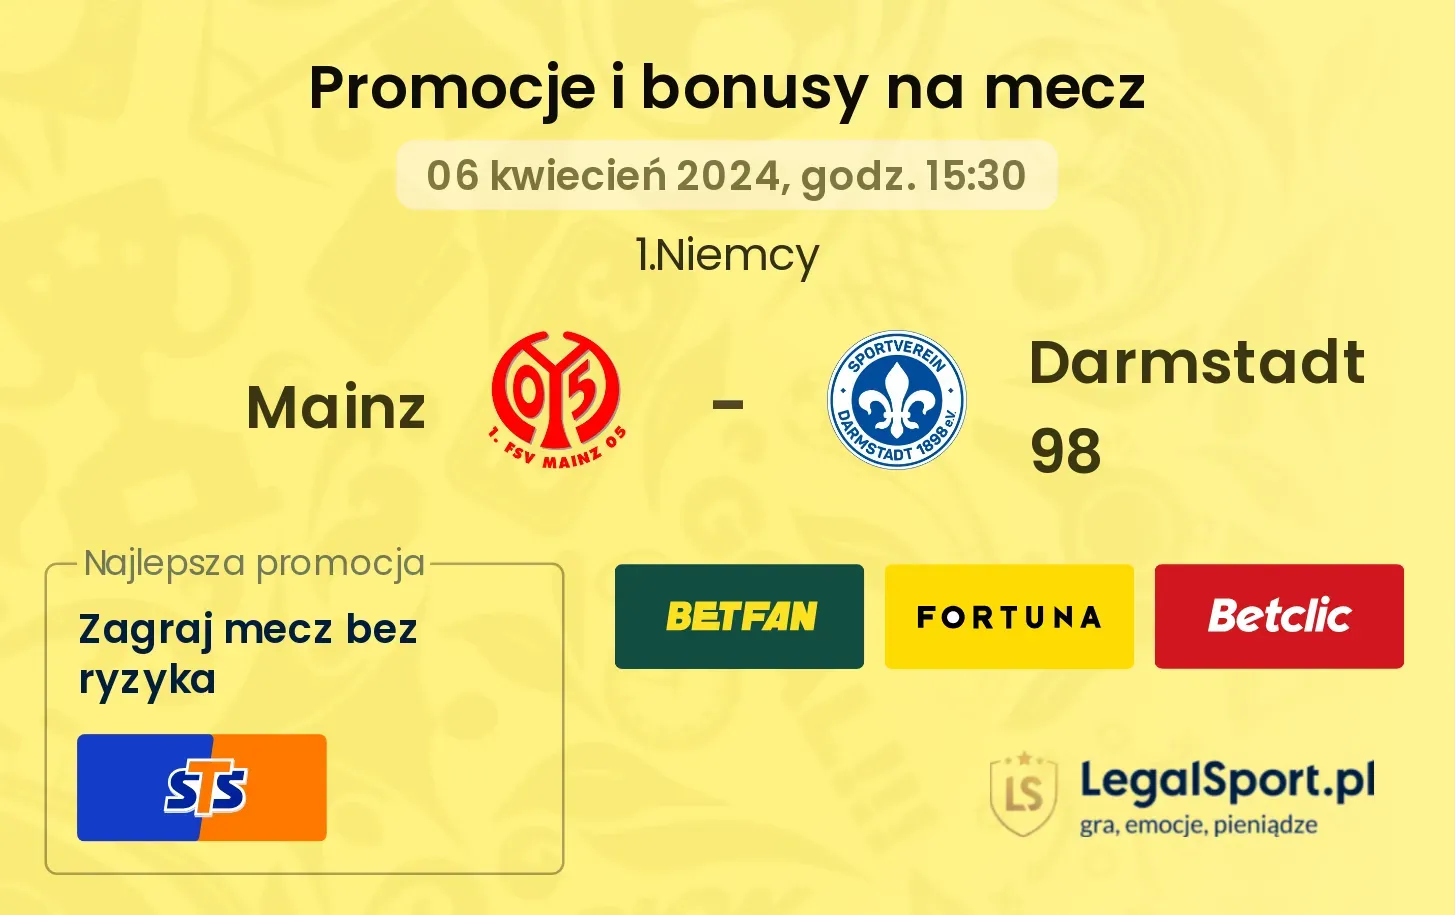 Mainz - Darmstadt 98 promocje bonusy na mecz